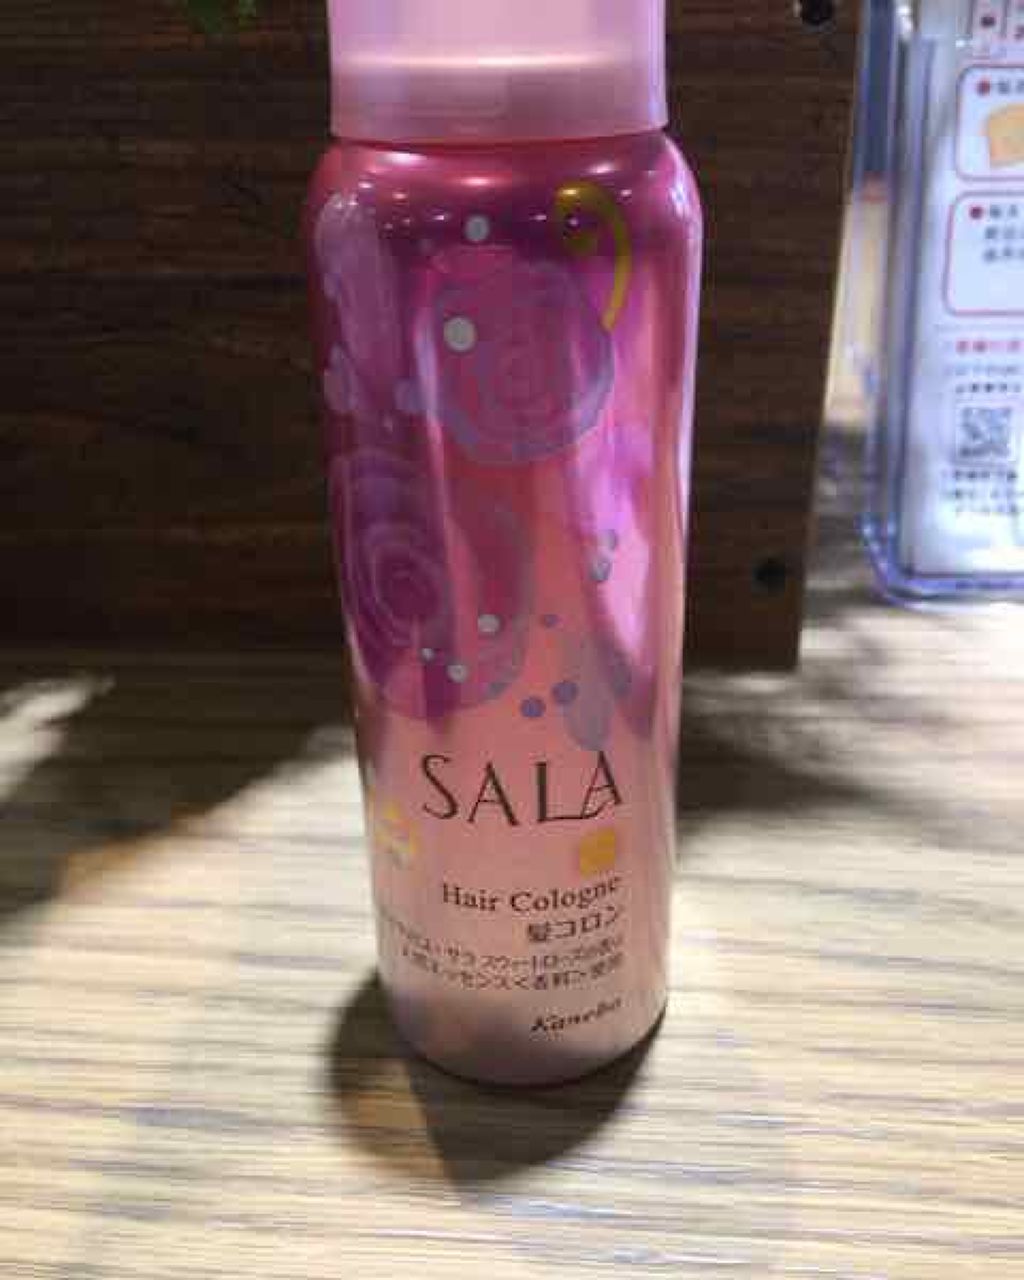 髪コロンb サラ スウィートローズの香り Salaの口コミ サラヘアコロン 昔のピンクパッ By えいちゃん 乾燥肌 50代後半 Lips